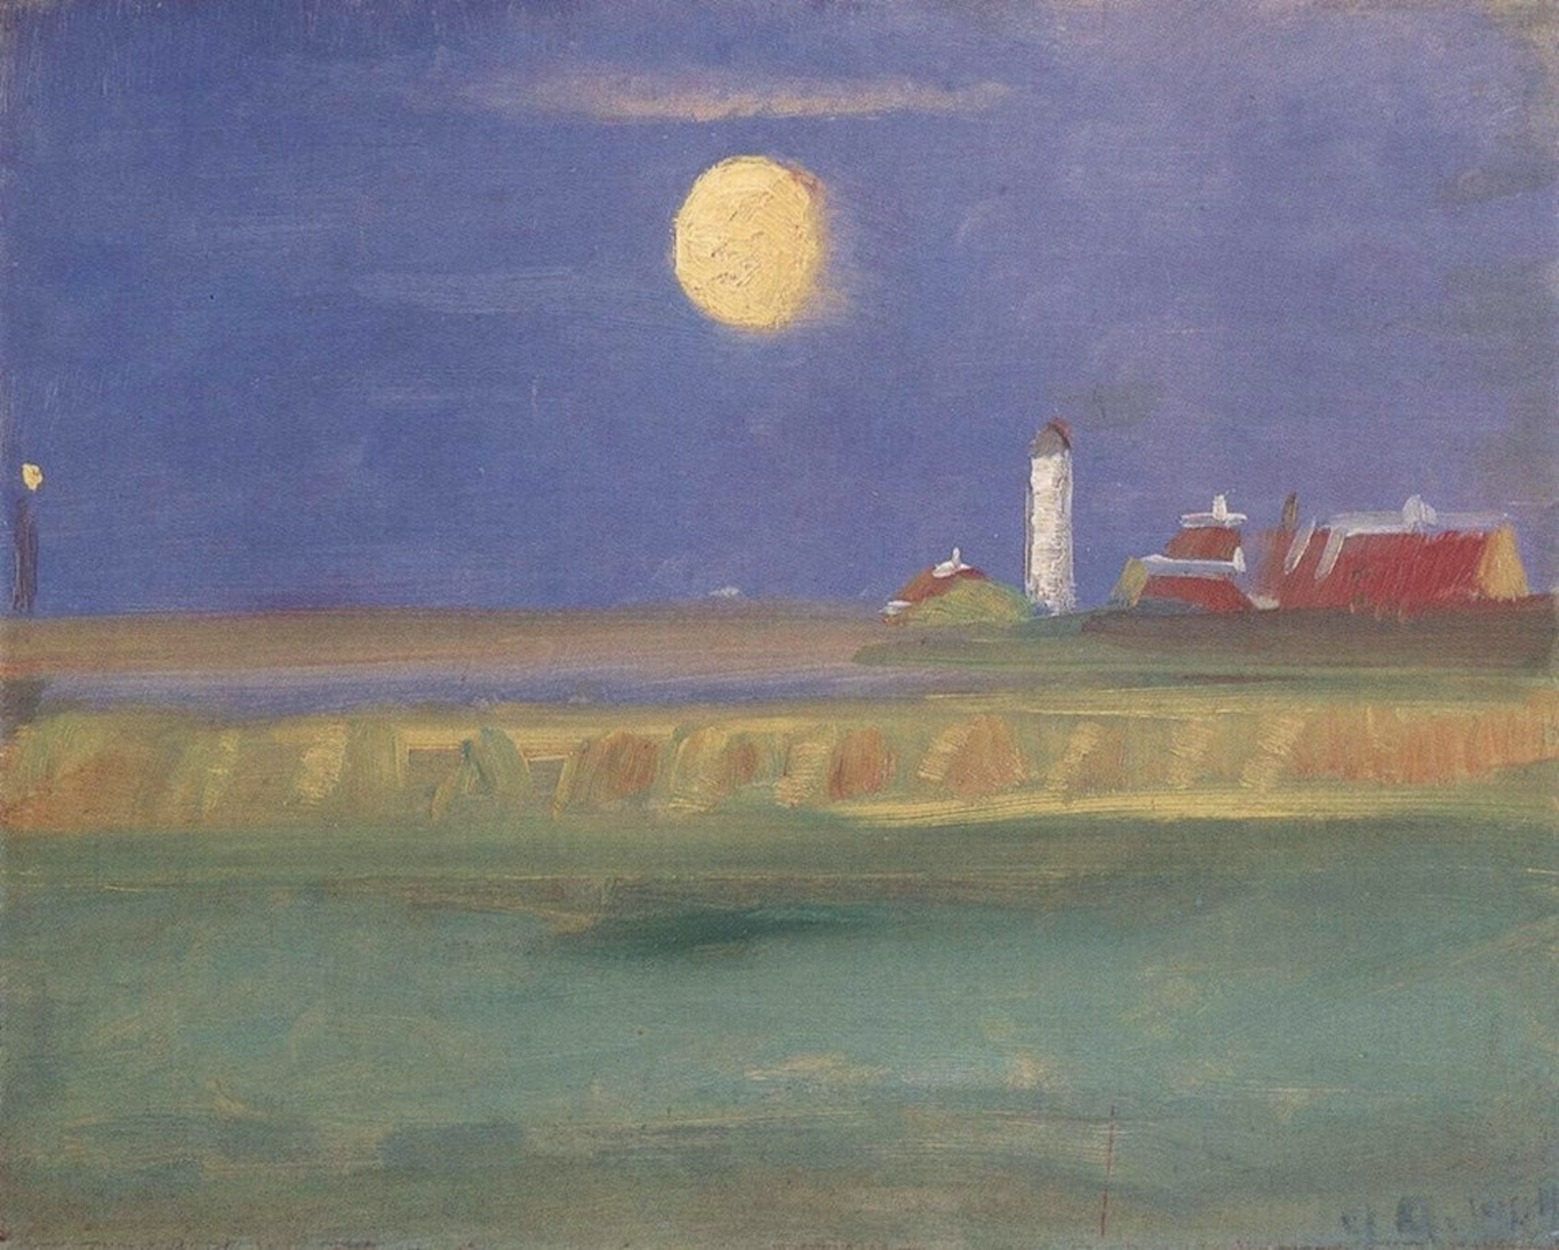 Maanavond. Vuurtoren by Anna Ancher - 1904 - 23 x 28 cm 